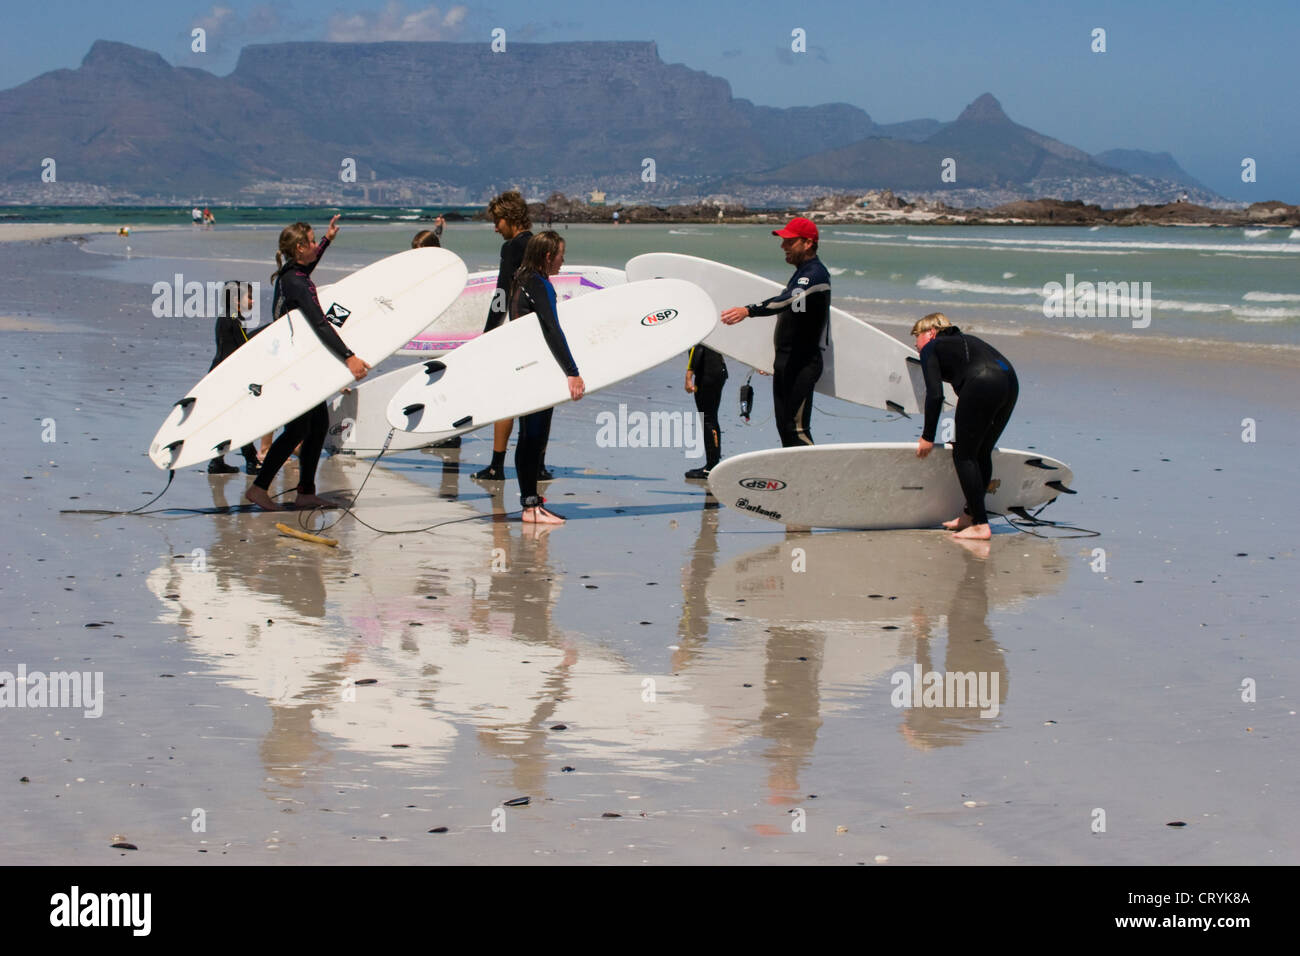 Surfers sur une plage du Cap avec la montagne de la table en arrière-plan Banque D'Images